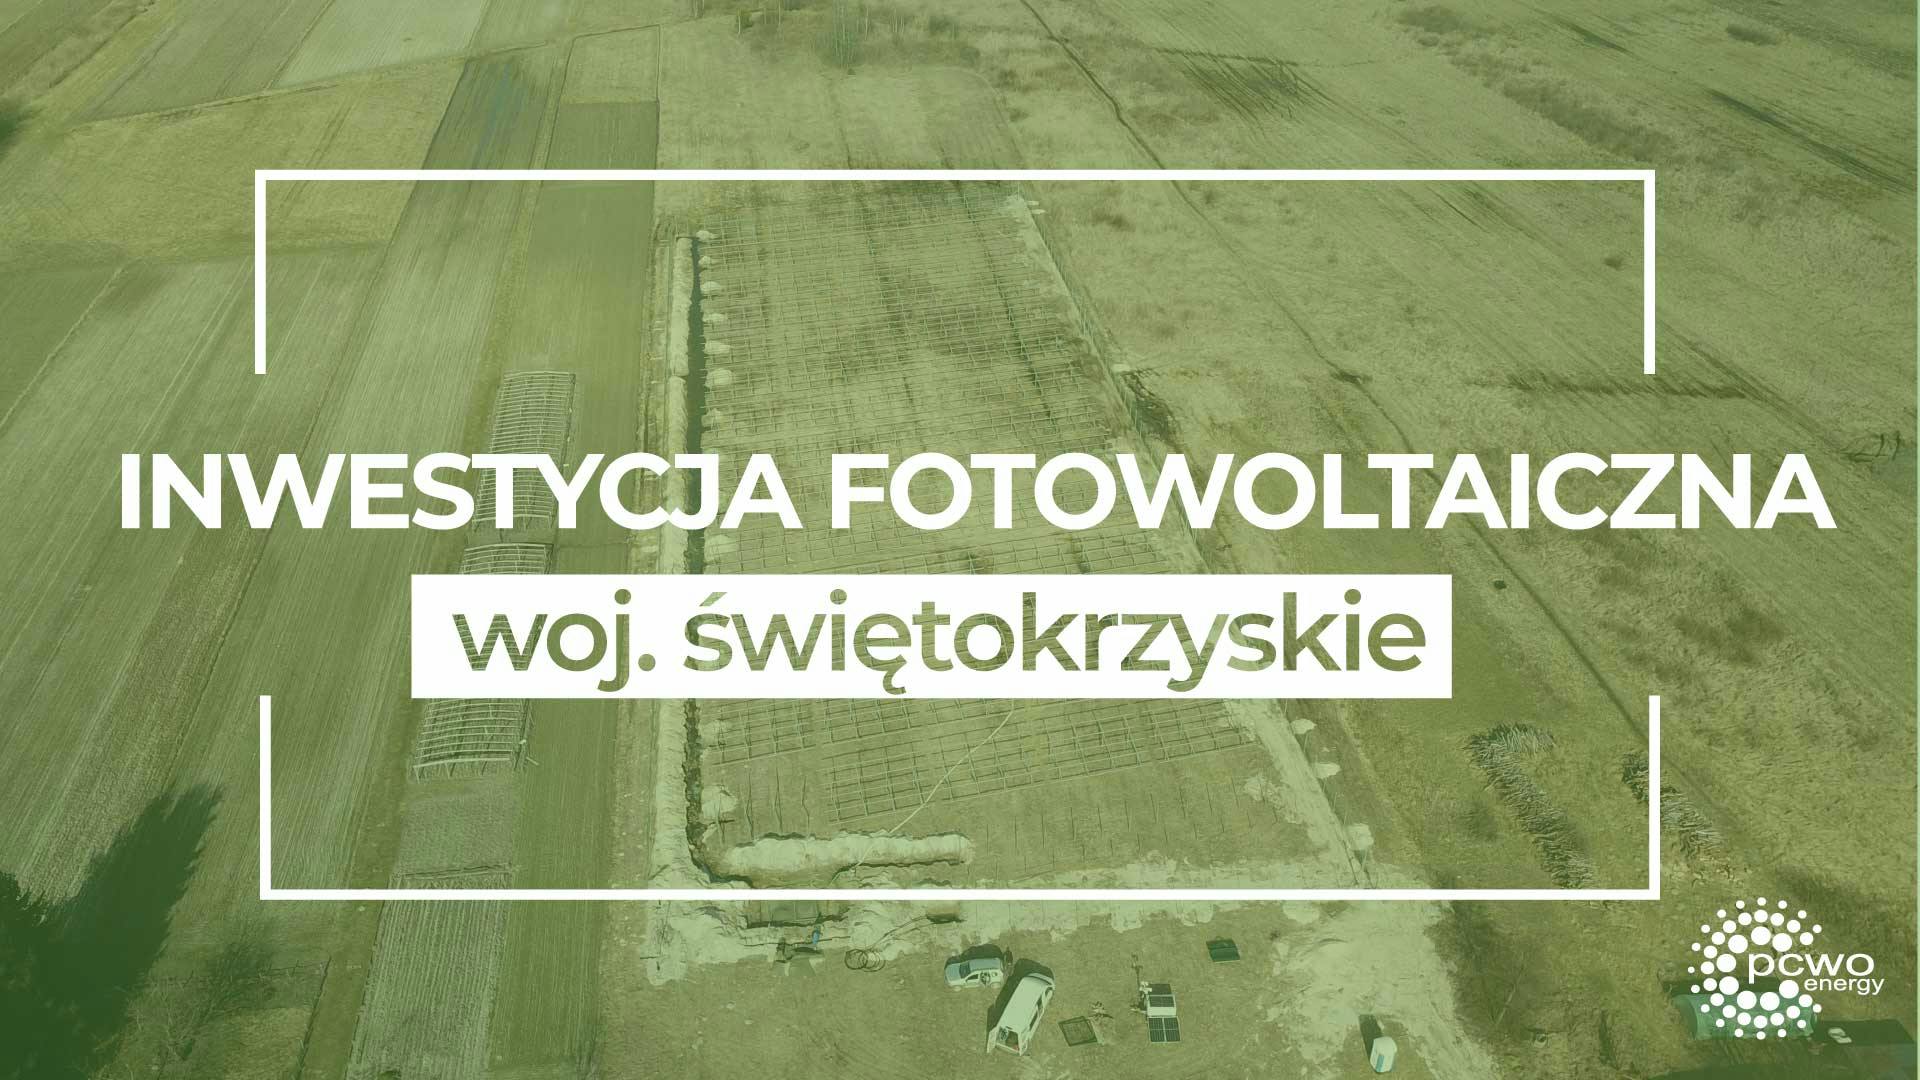 Cover Image for Inwestycja fotowoltaiczna w woj. świętokrzyskim